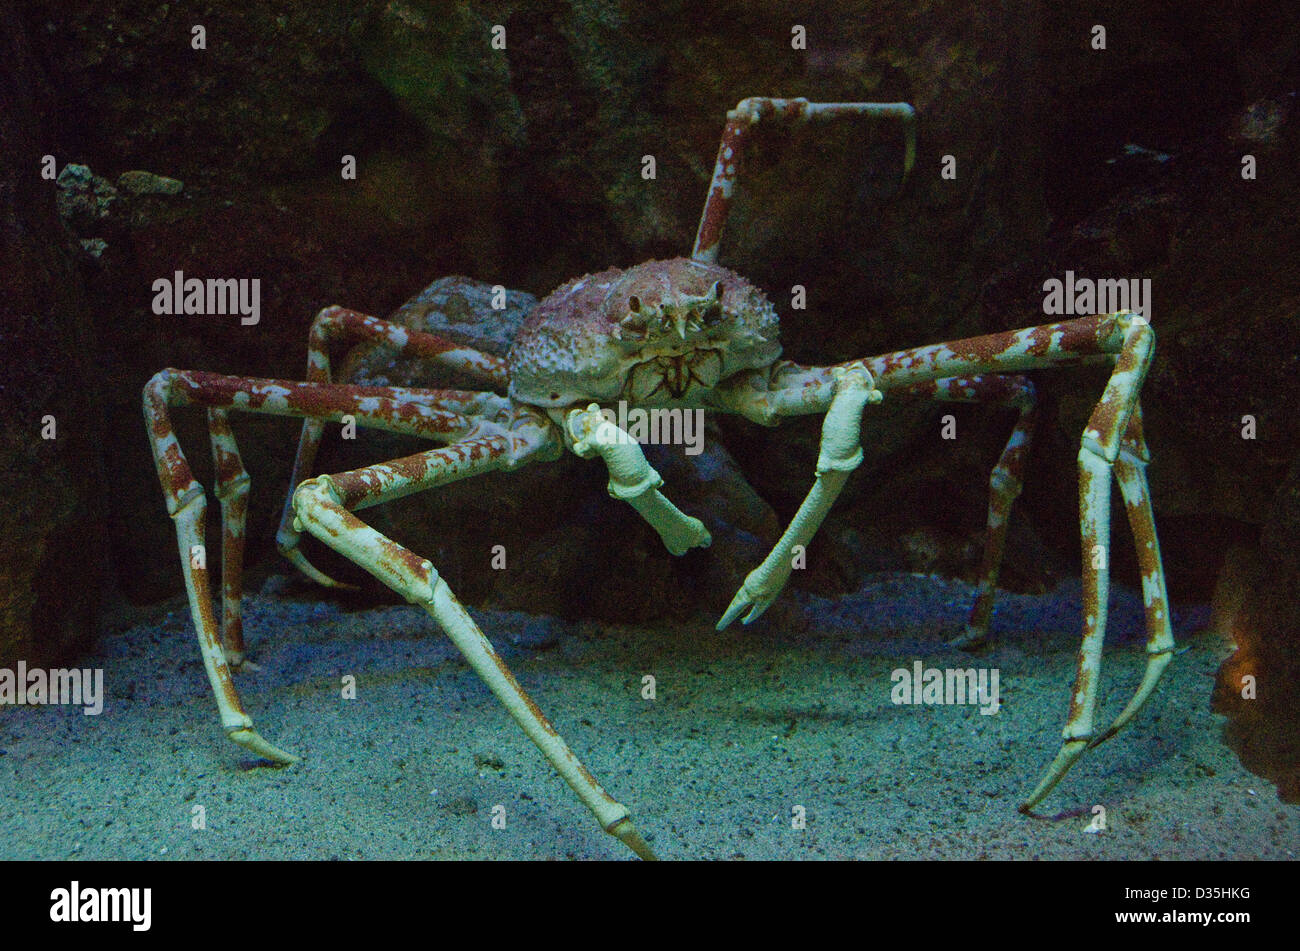 Araignée de mer japonais sous l'eau dans un aquarium au Japon Banque D'Images